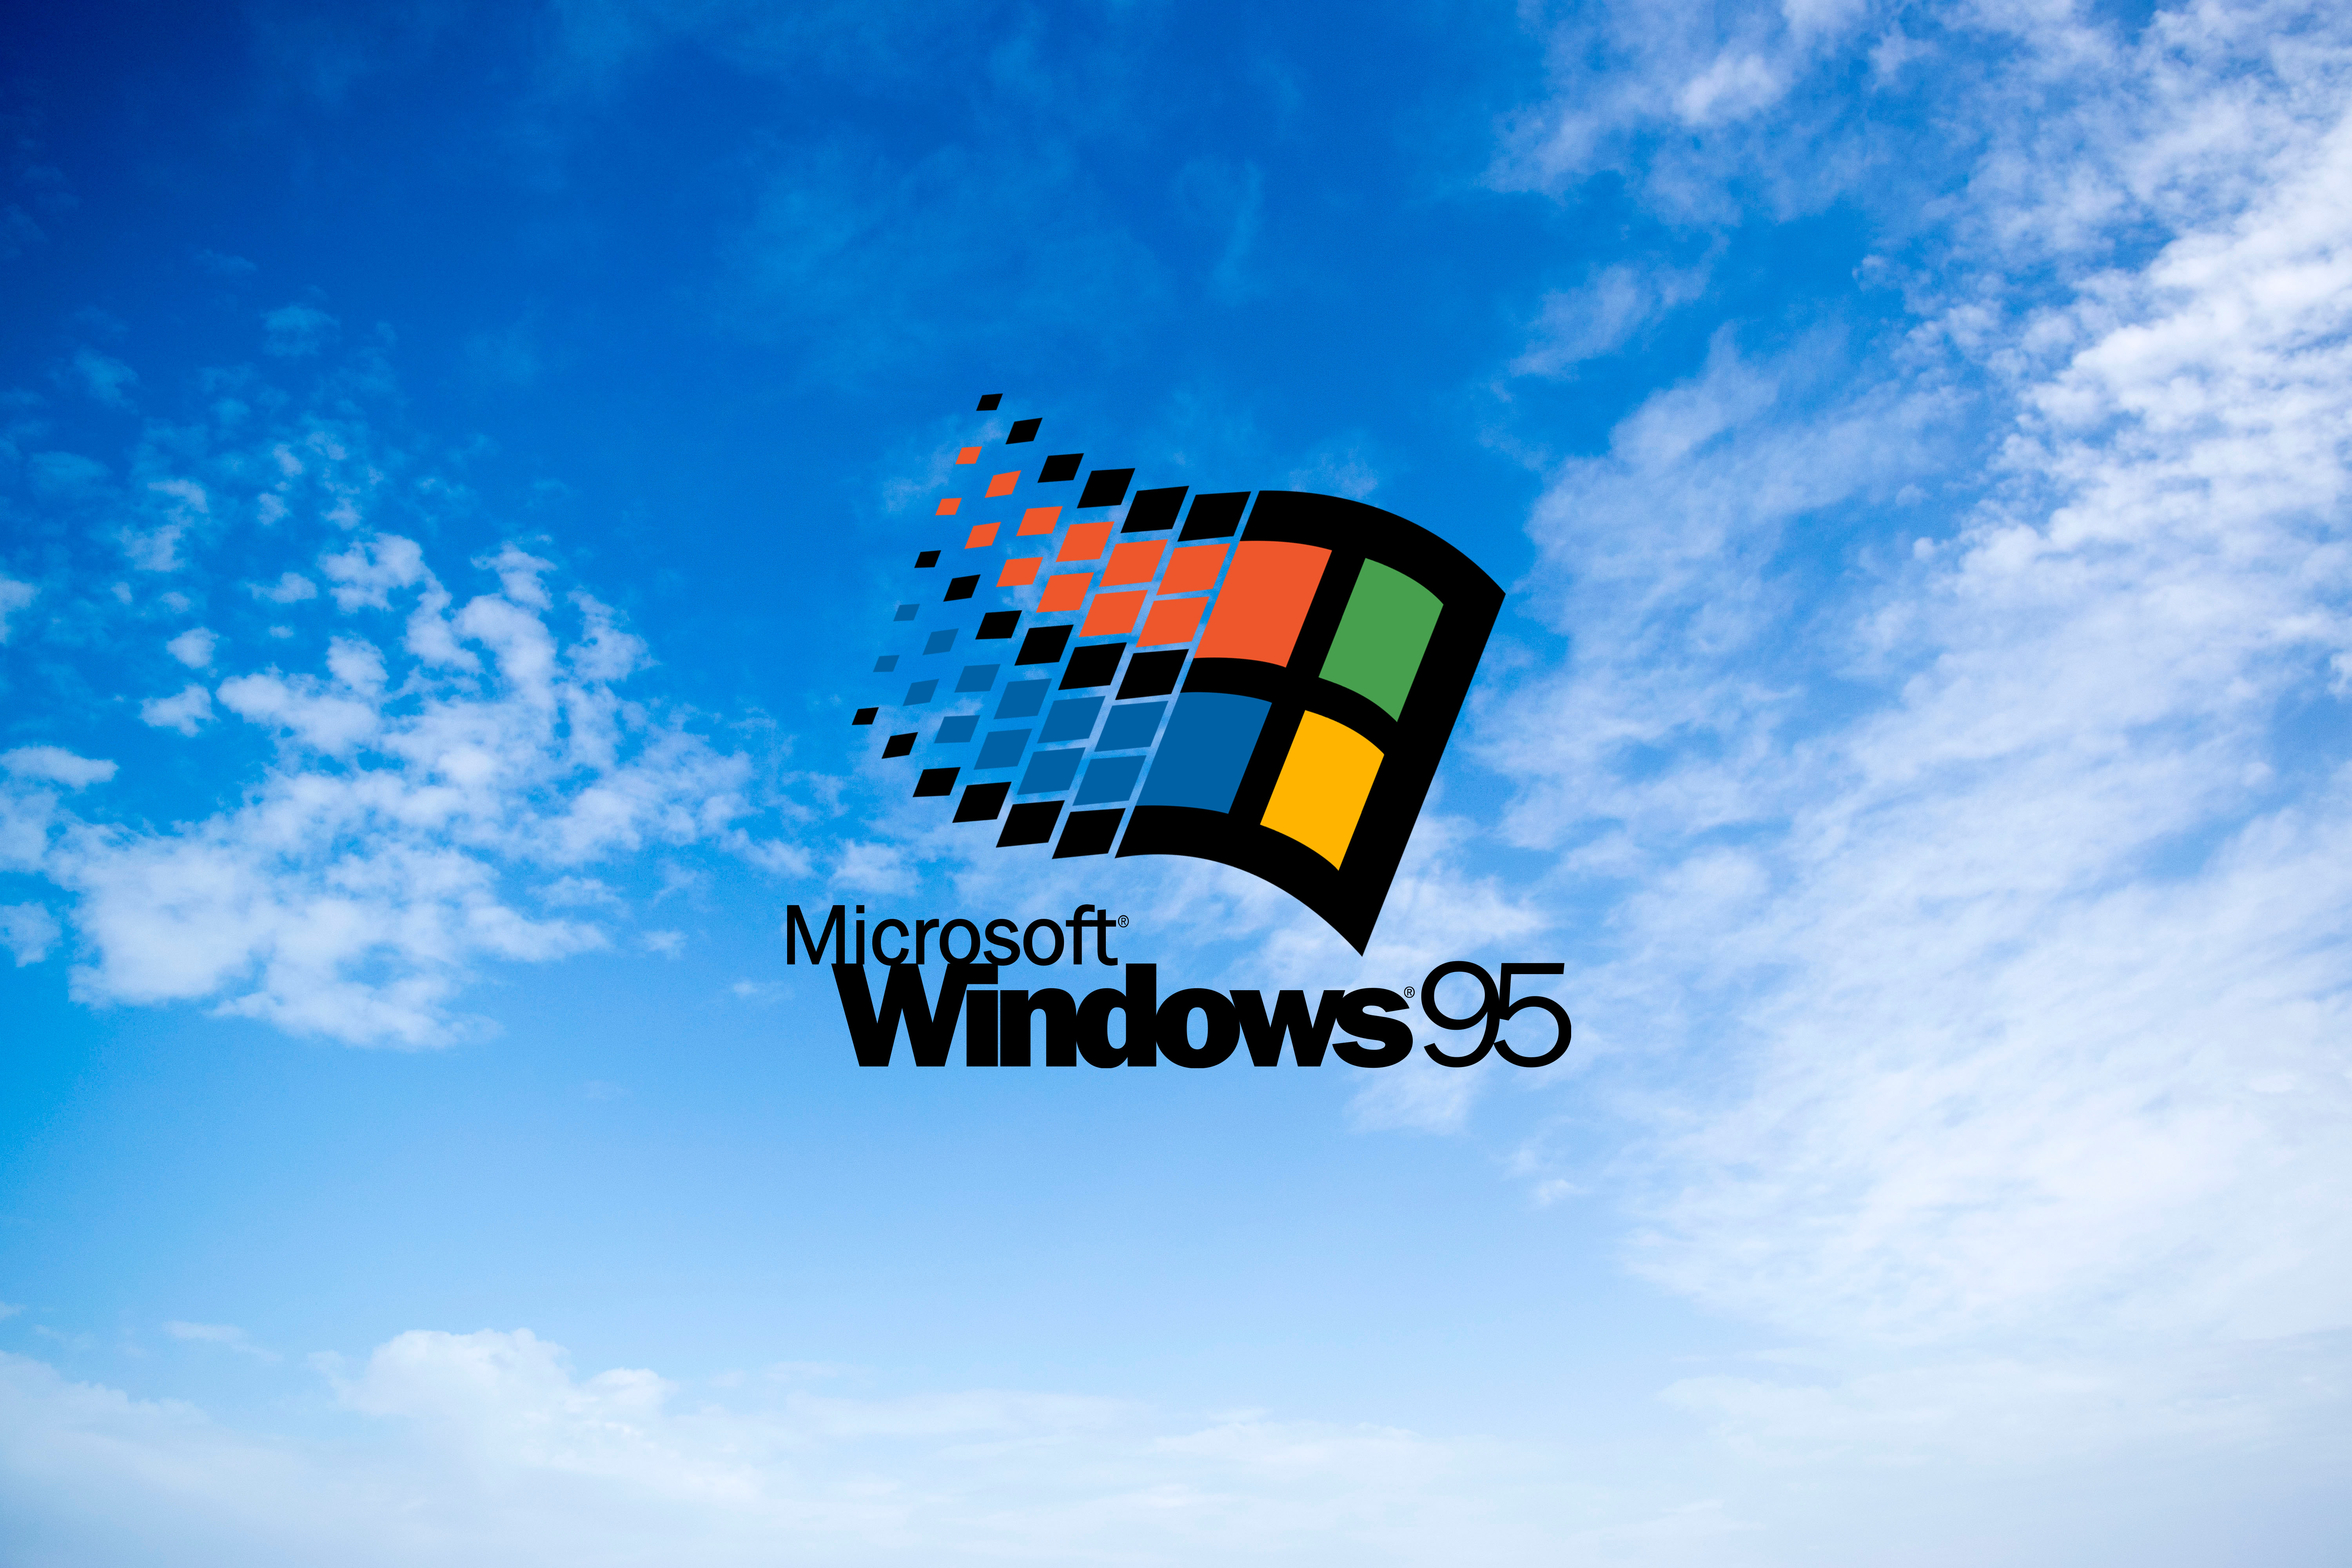 Hình nền chất lượng cao miễn phí cho Windows 95 sẽ khiến bạn thích thú ngay từ cái nhìn đầu tiên. Sự kết hợp hoàn hảo giữa chất lượng và độ phân giải sẽ khiến cho màn hình máy tính của bạn thật sự sống động và cuốn hút. Hãy tải về ngay nhé!